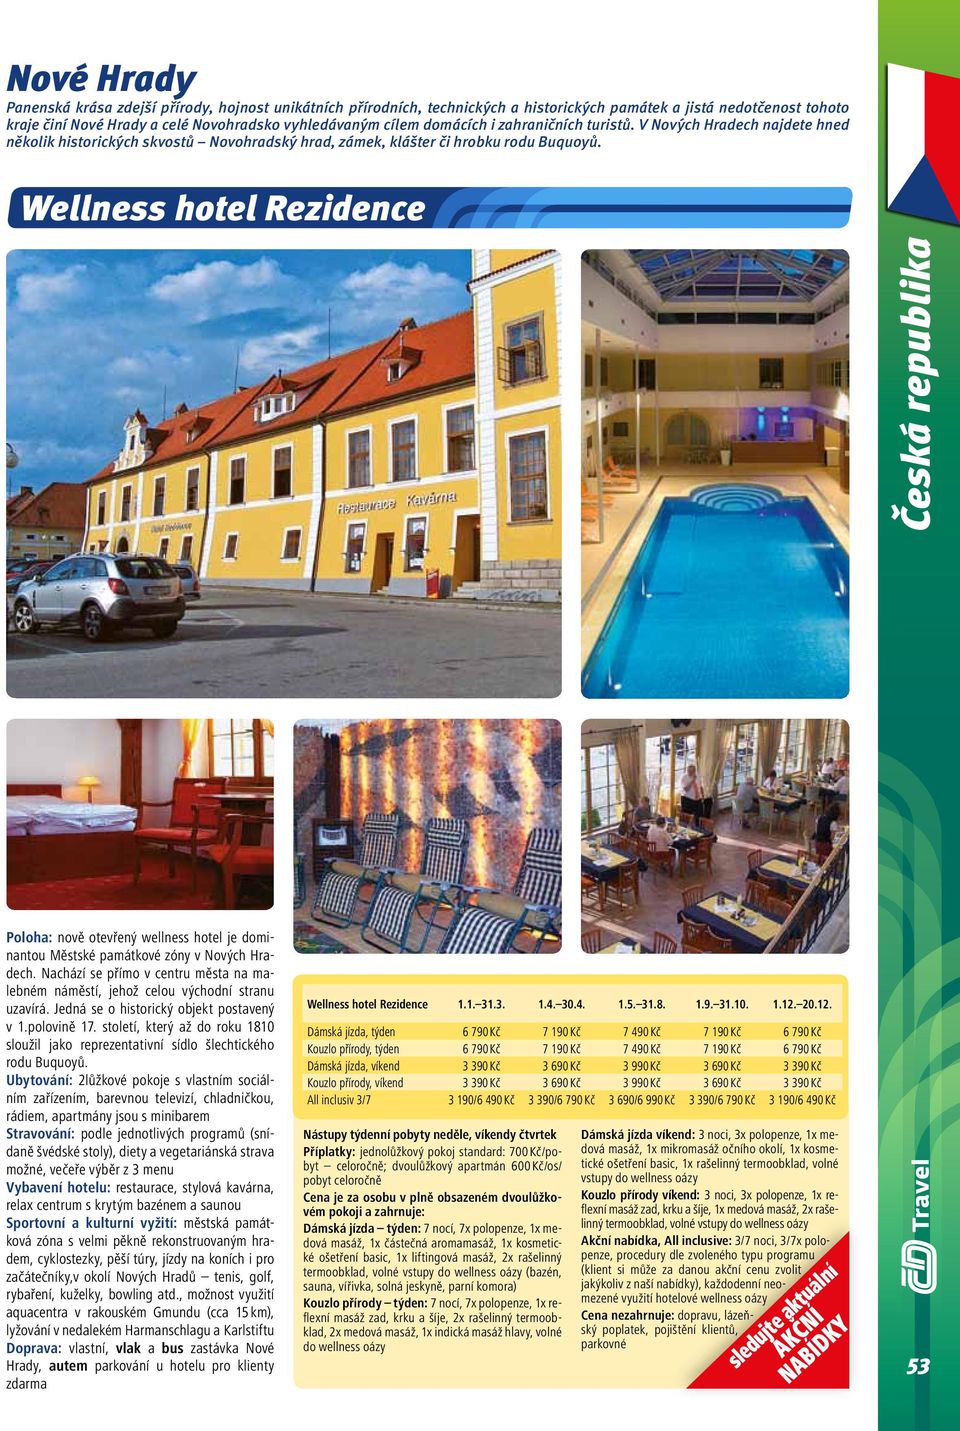 Wellness hotel Rezidence Poloha: nově otevřený wellness hotel je dominantou Městské památkové zóny v Nových Hradech.